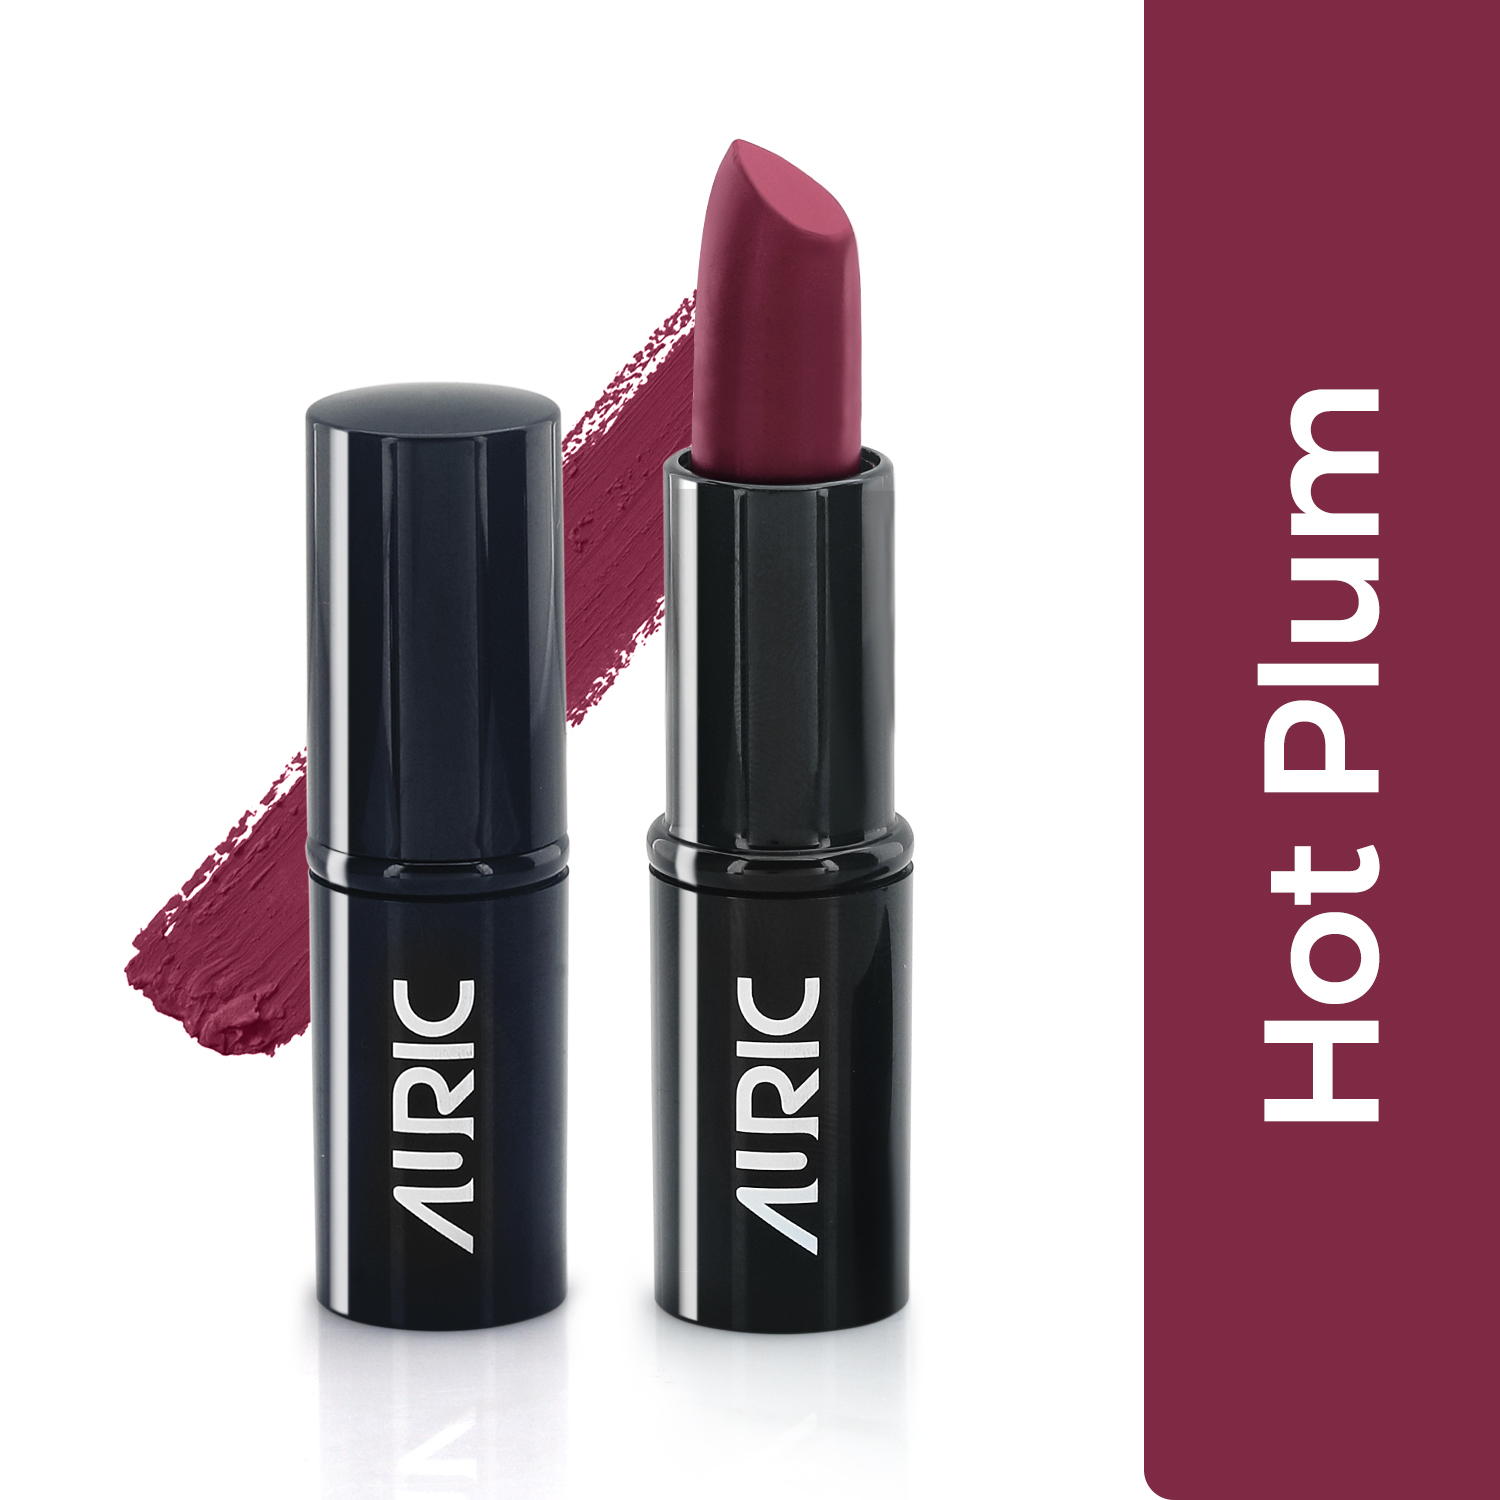 Auric MatteCreme Lipstick, Hot Plum - 4 g